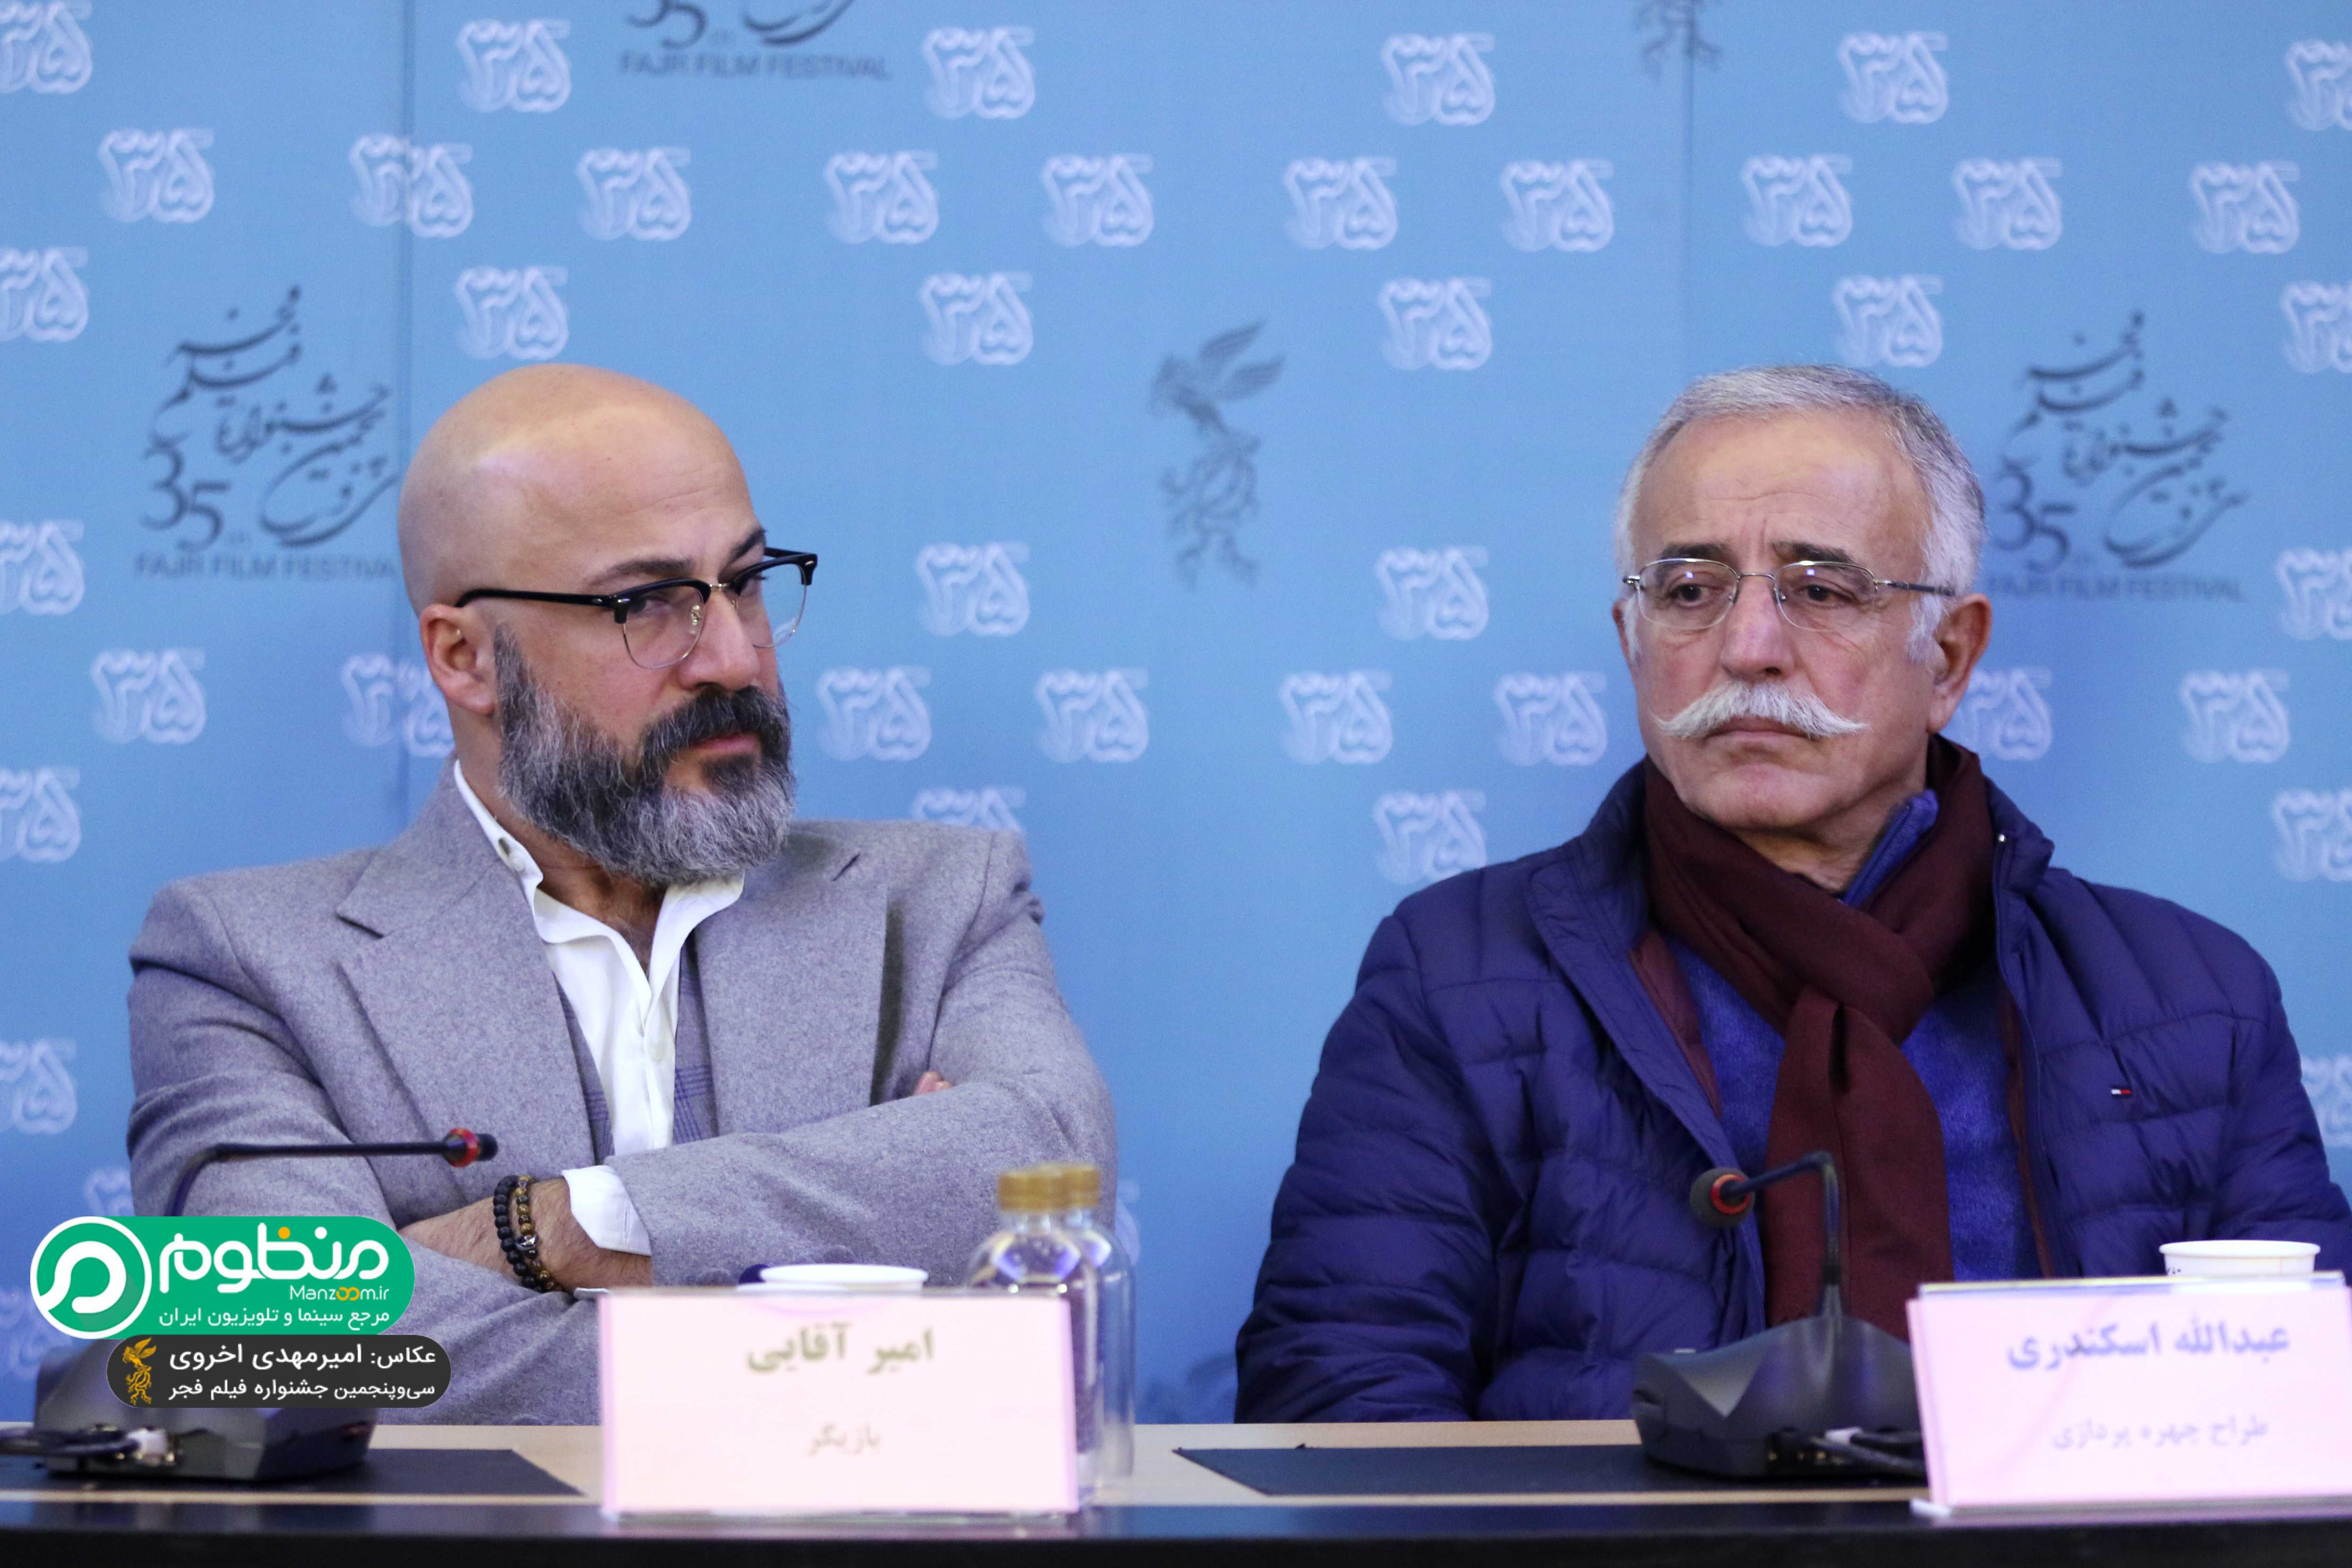 امیر آقایی در نشست خبری فیلم سینمایی بدون تاریخ بدون امضاء به همراه عبدالله اسکندری